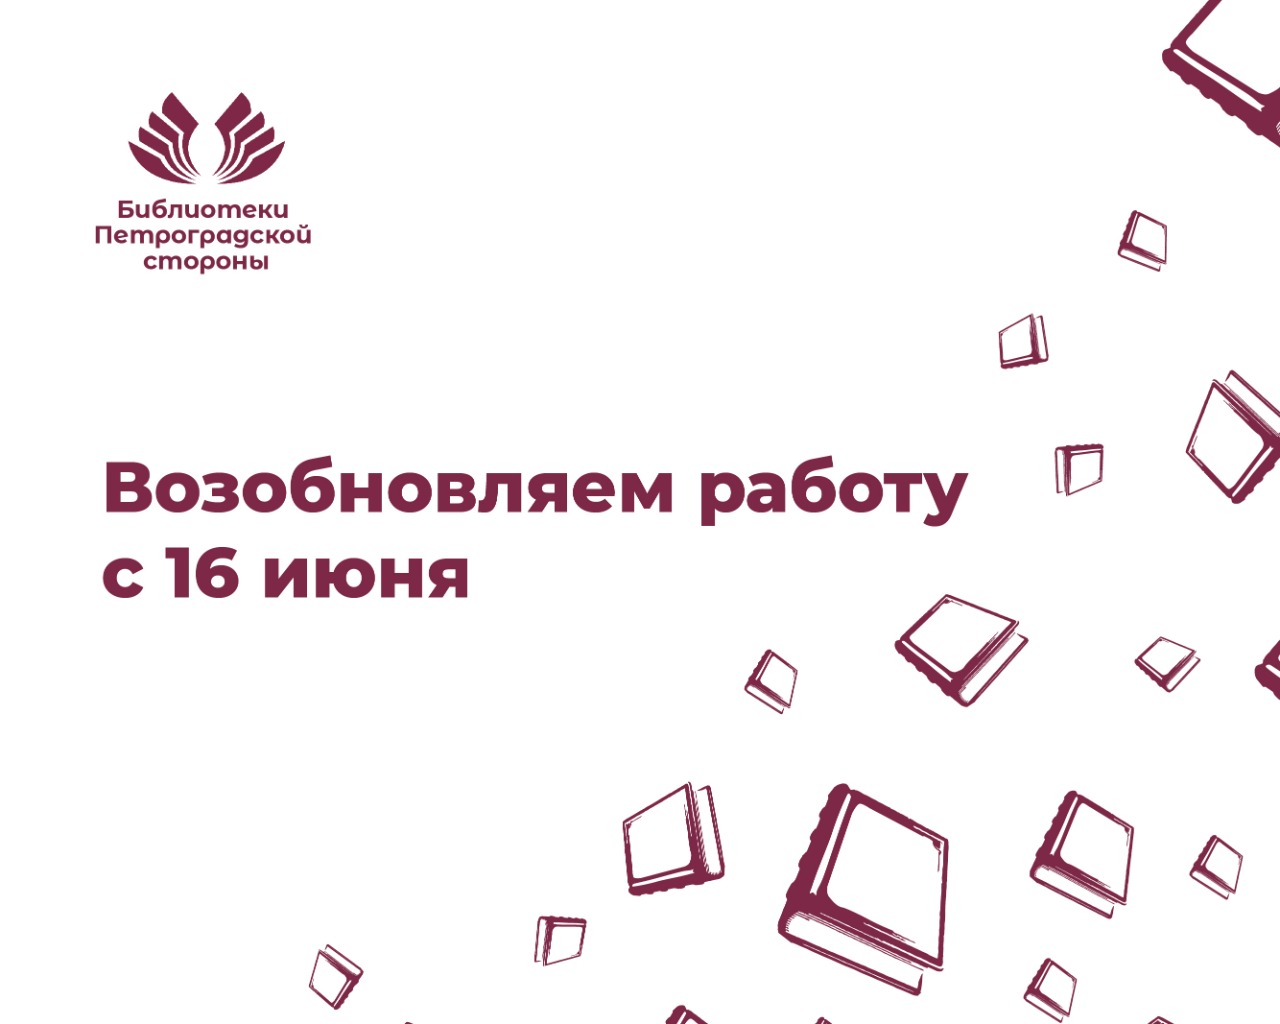 Библиотеки Петроградской стороны возобновляют работу с читателями